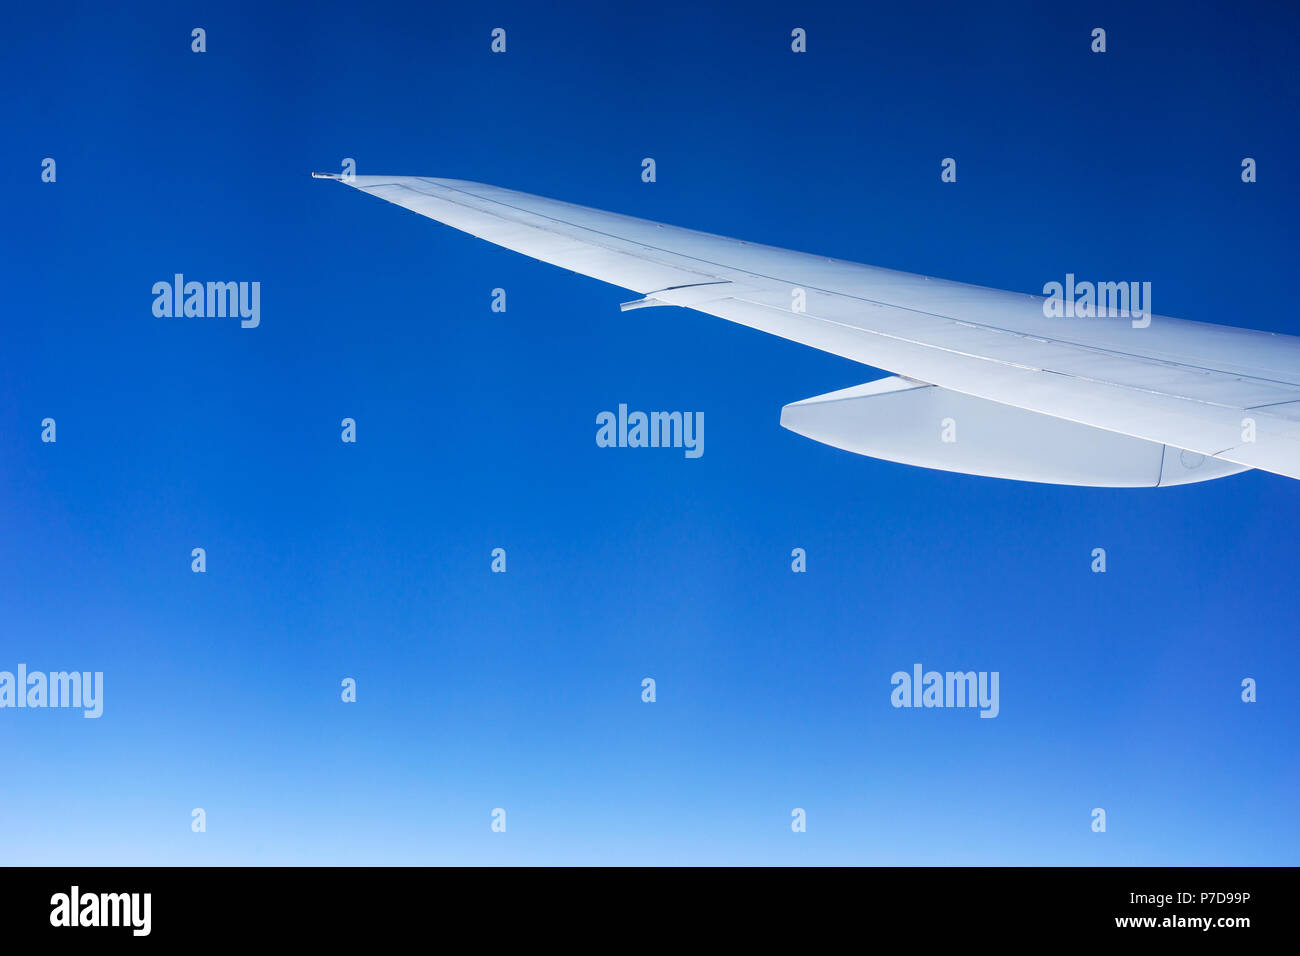 Ala de avión blanco graduado aislado en un cielo azul. Concepto de vuelo y viajes. Foto de stock